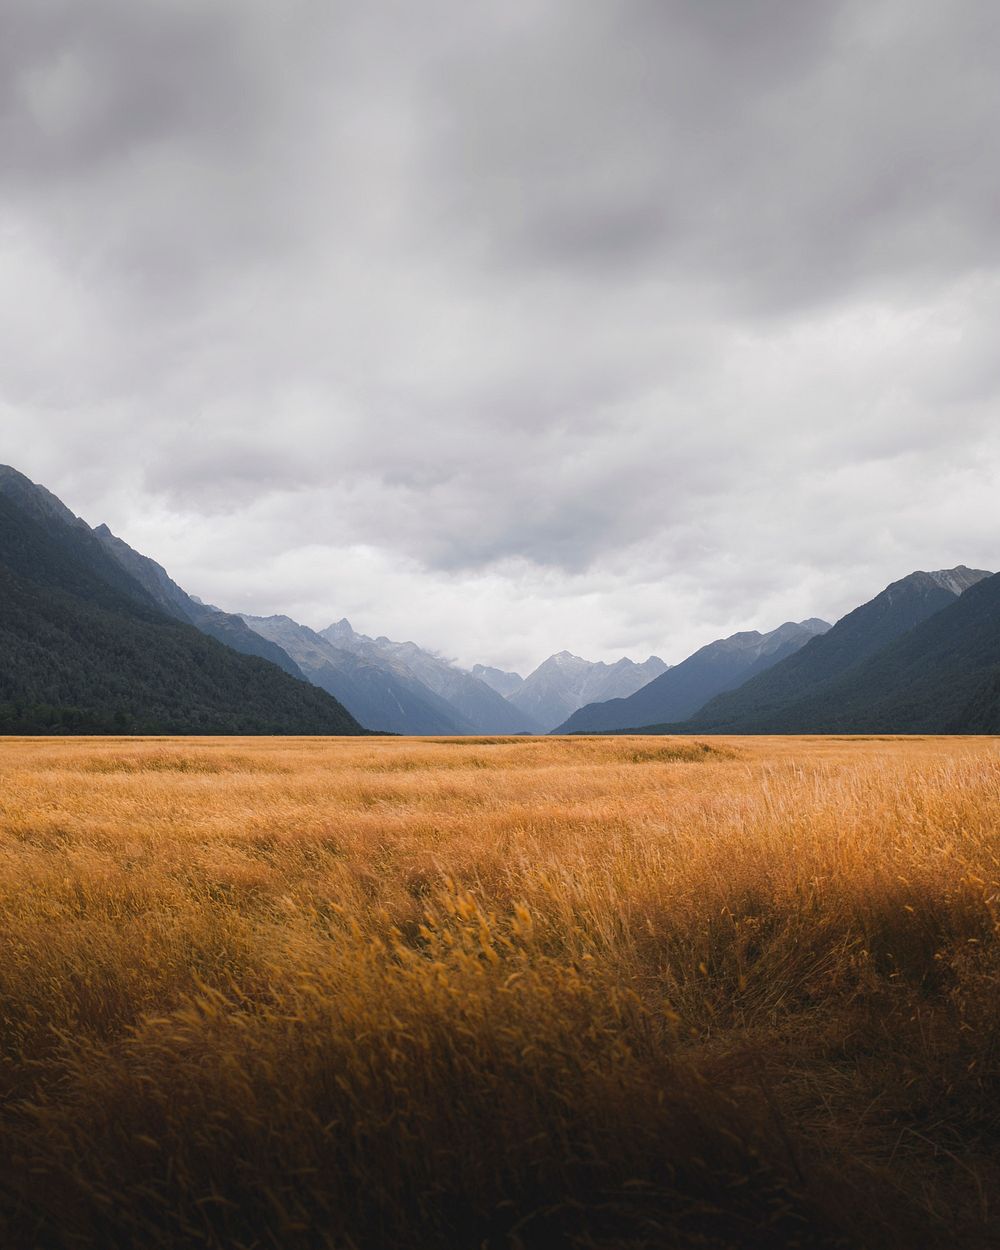 Grassland in Milford Sound, New Zealand